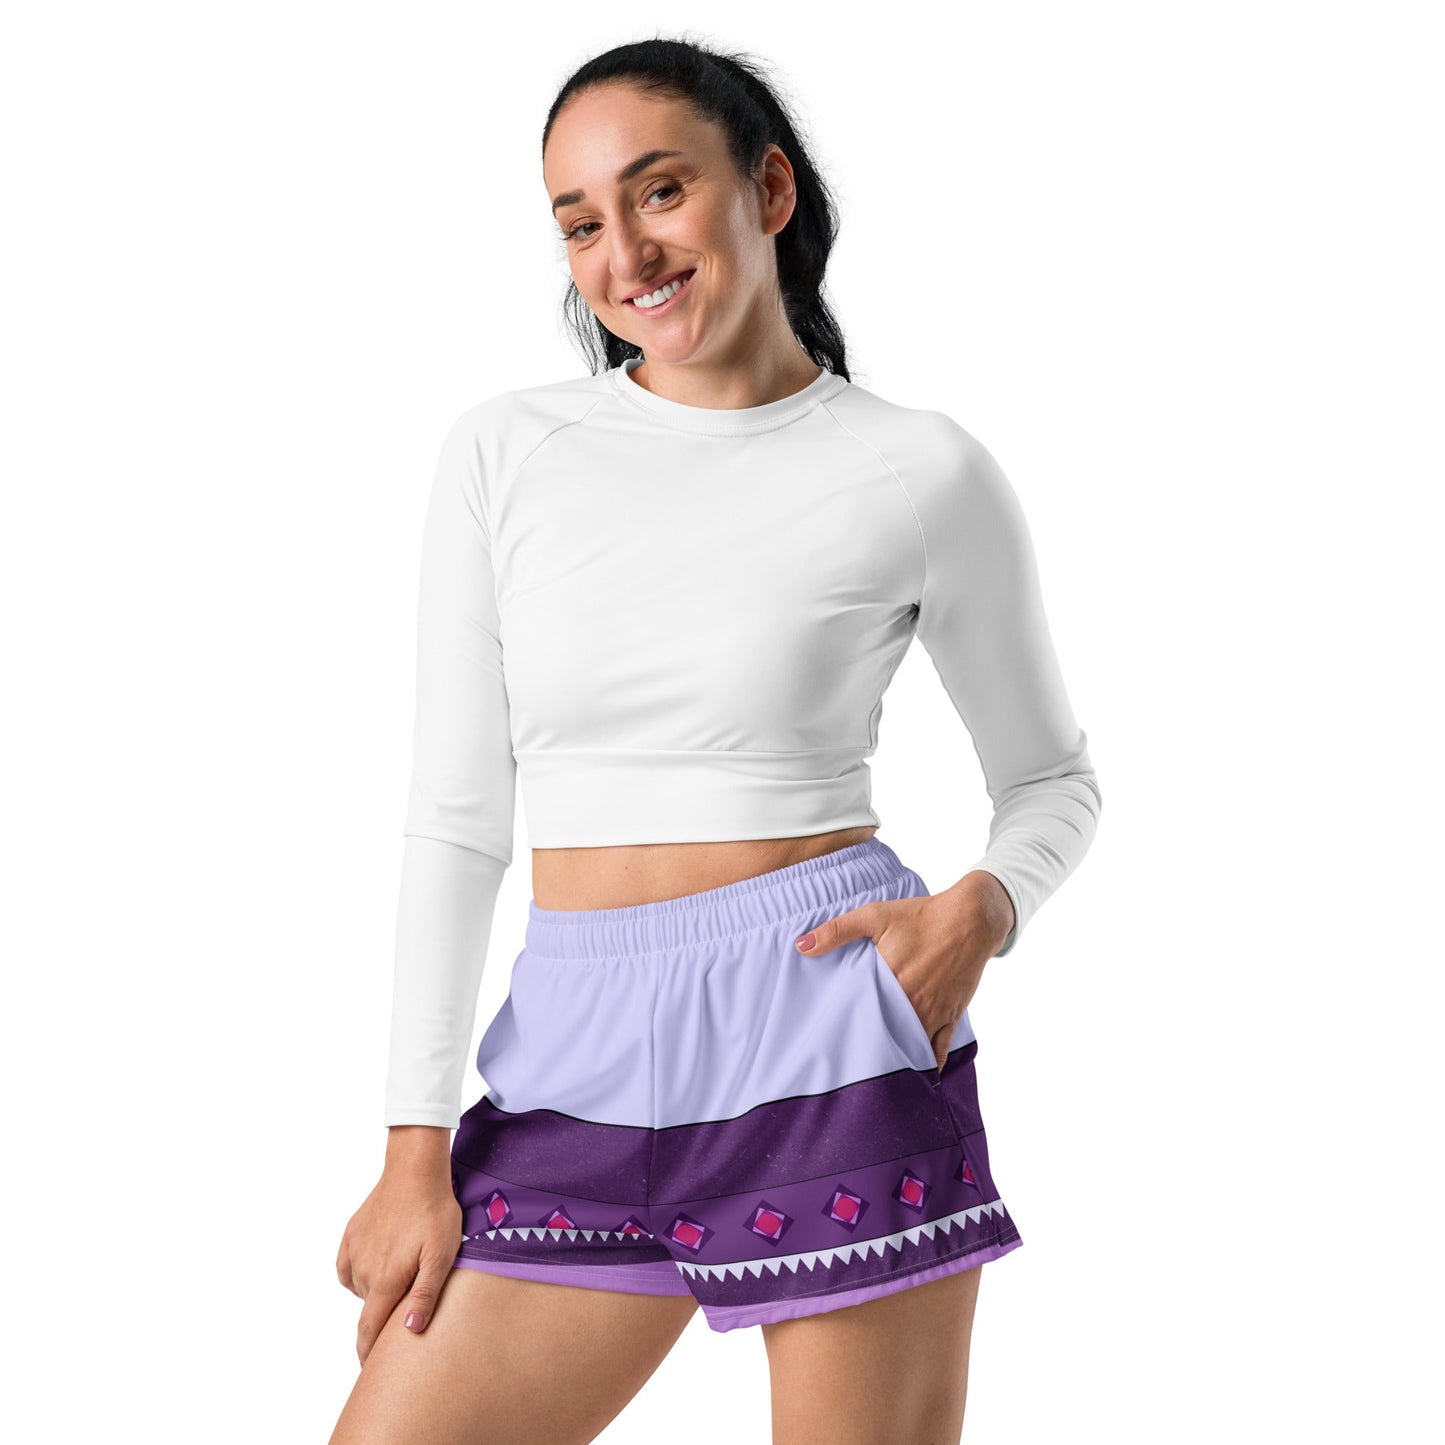 The Asha Women’s Recycled Athletic Shorts asha race costumeasha wish styleAdult ShortsWrong Lever Clothing